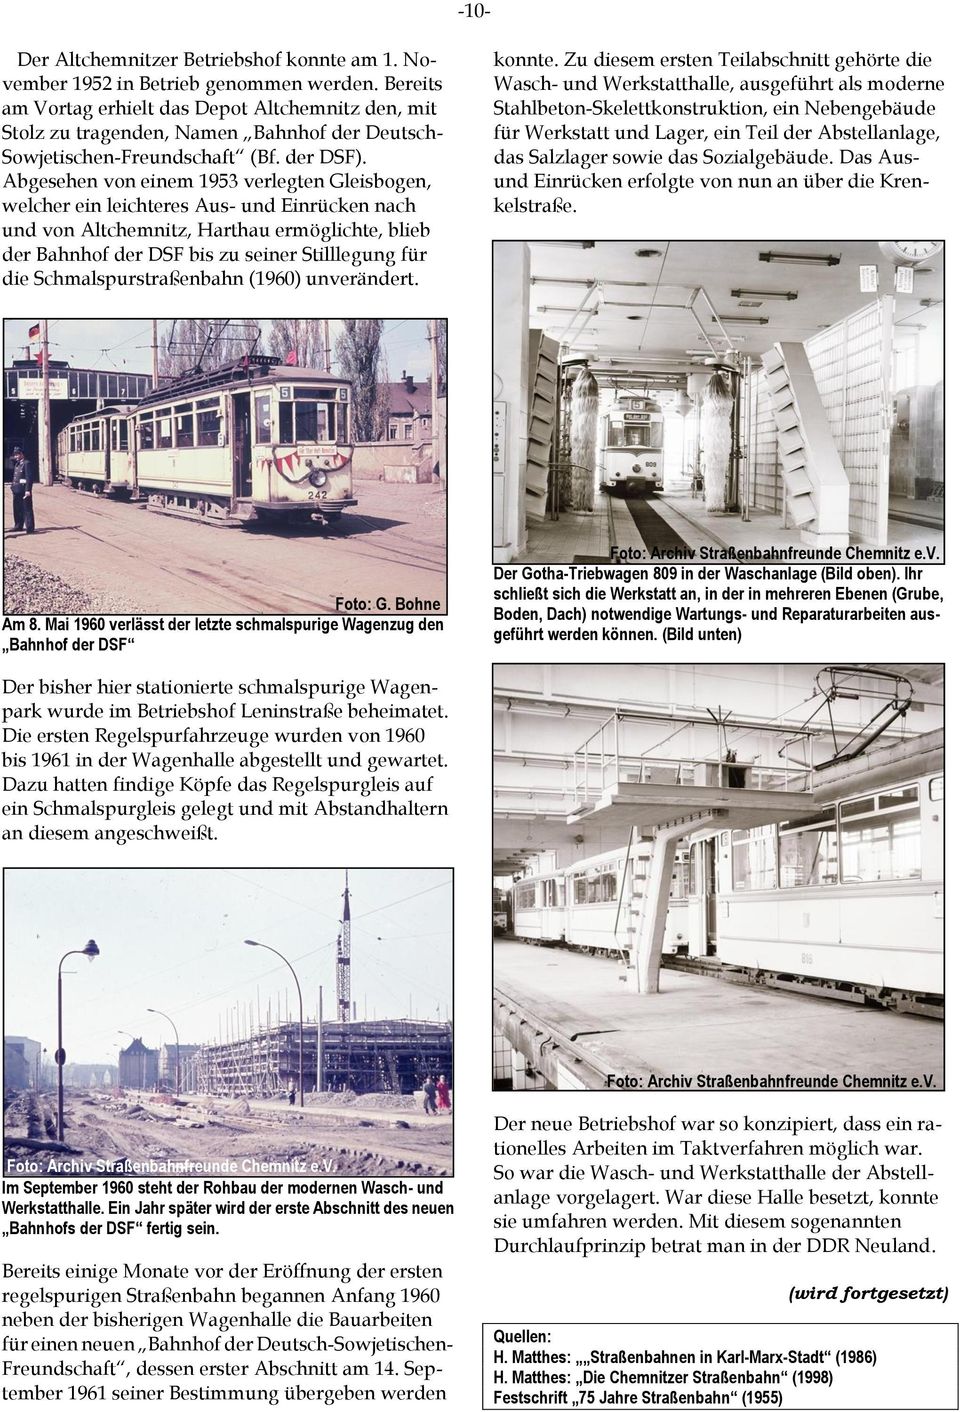 Abgesehen von einem 1953 verlegten Gleisbogen, welcher ein leichteres Aus- und Einrücken nach und von Altchemnitz, Harthau ermöglichte, blieb der Bahnhof der DSF bis zu seiner Stilllegung für die